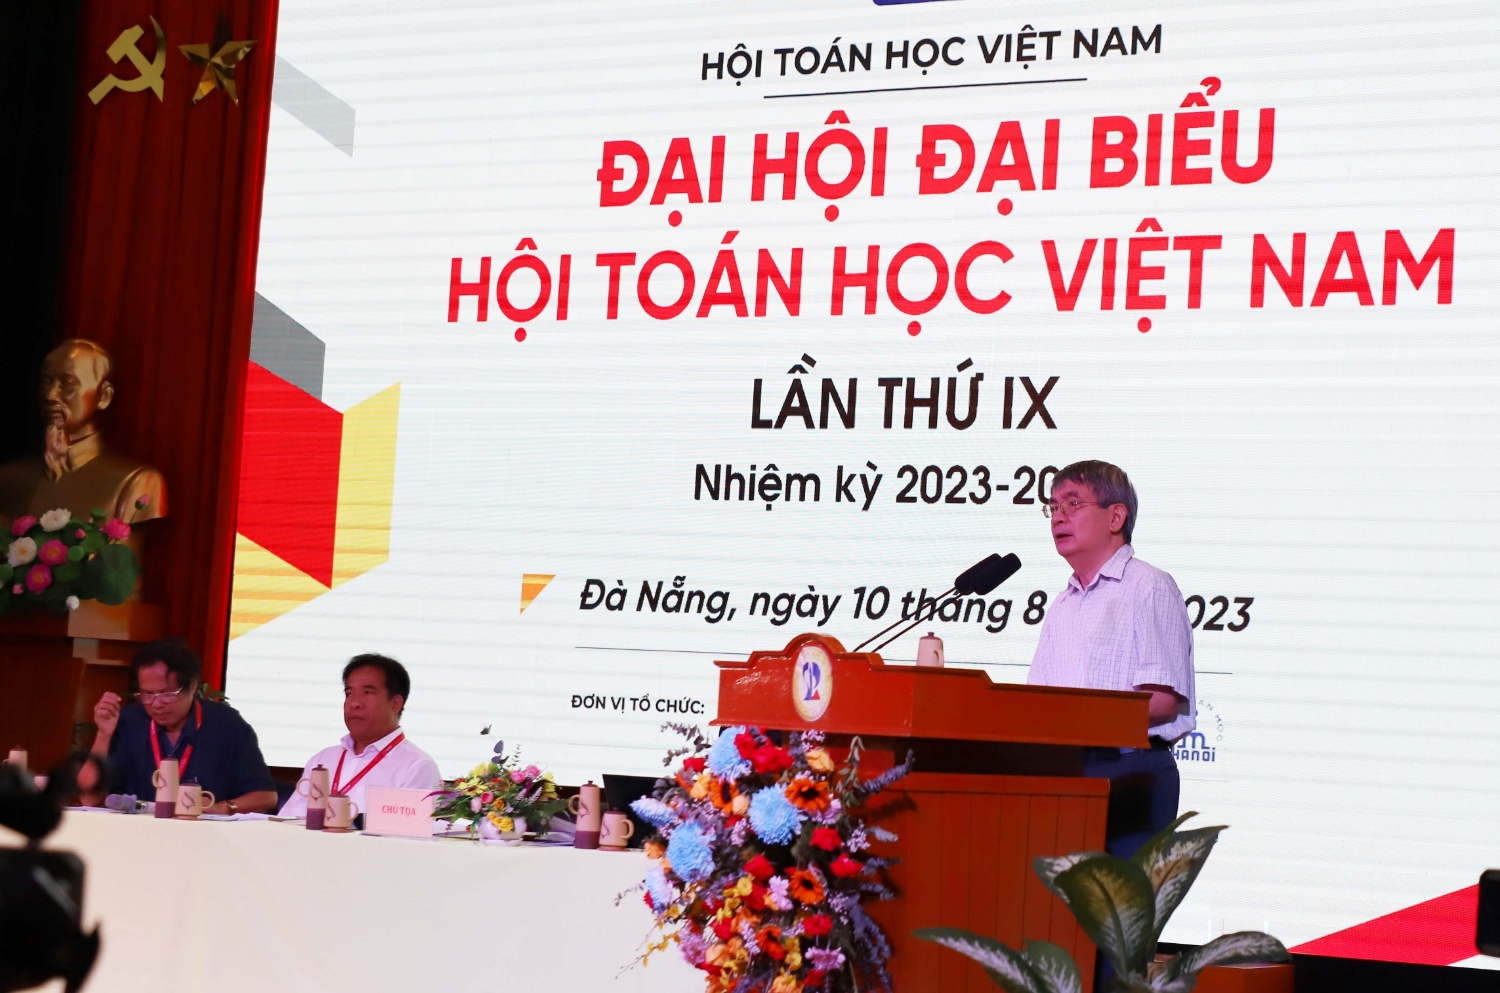 Dai hoi dai bieu Hoi Toan hoc Viet Nam lan thu 9 09